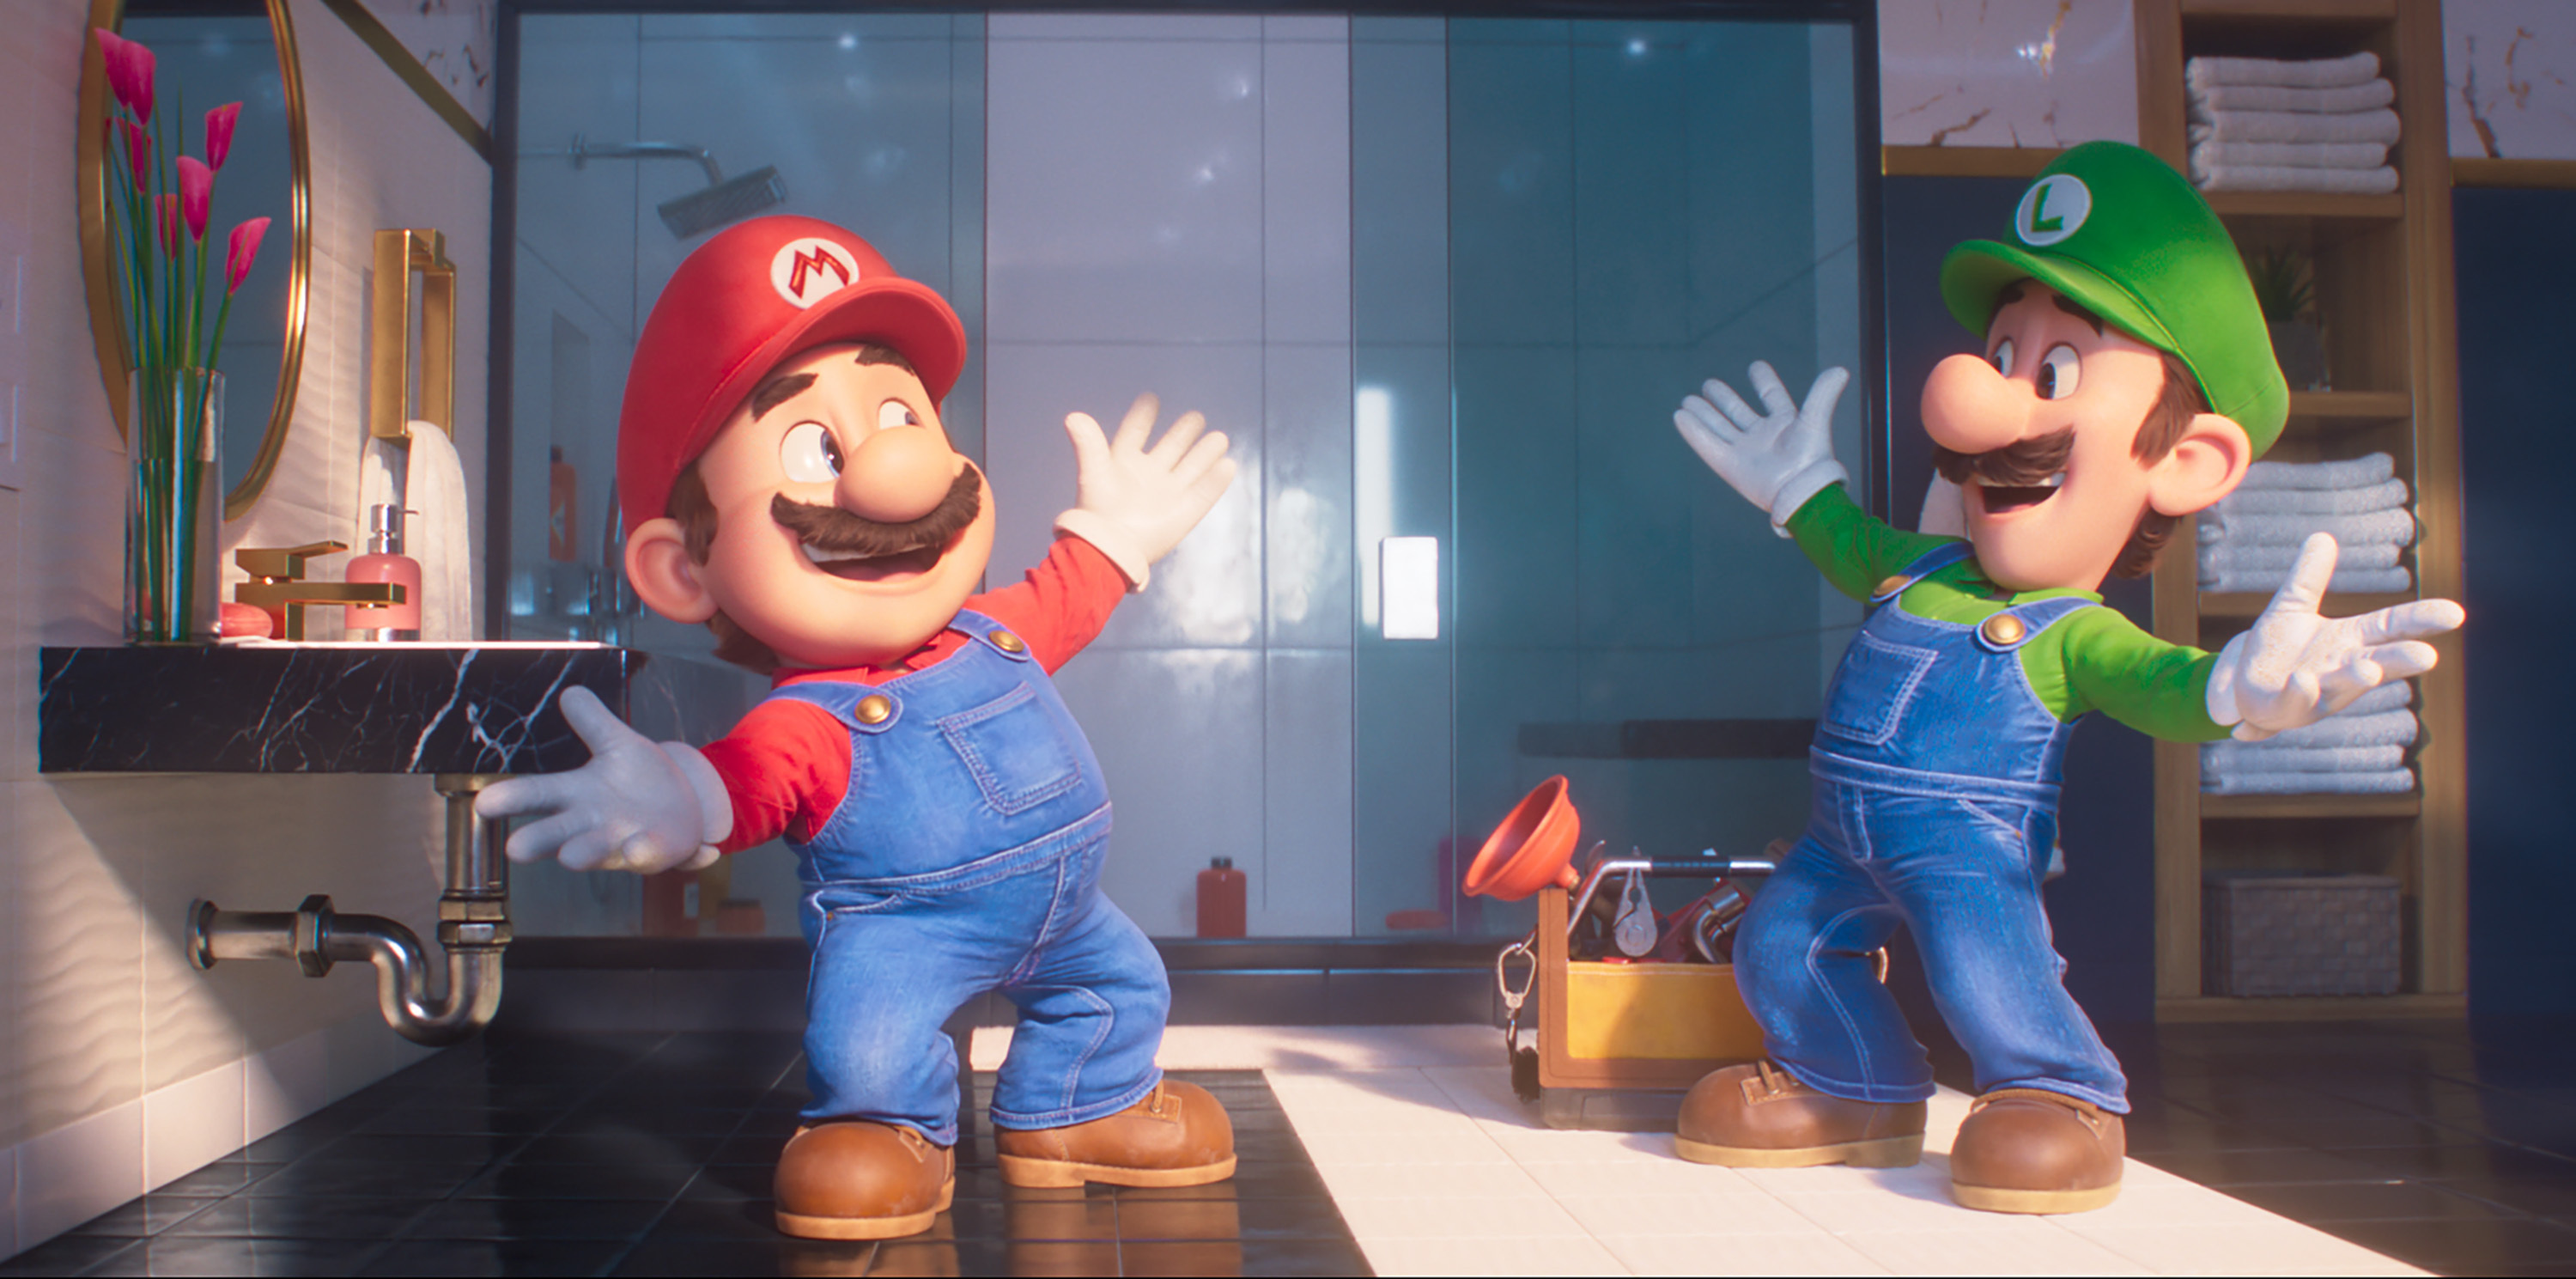 Super Mario Bros. Movie Heading to Netflix in December! Details on